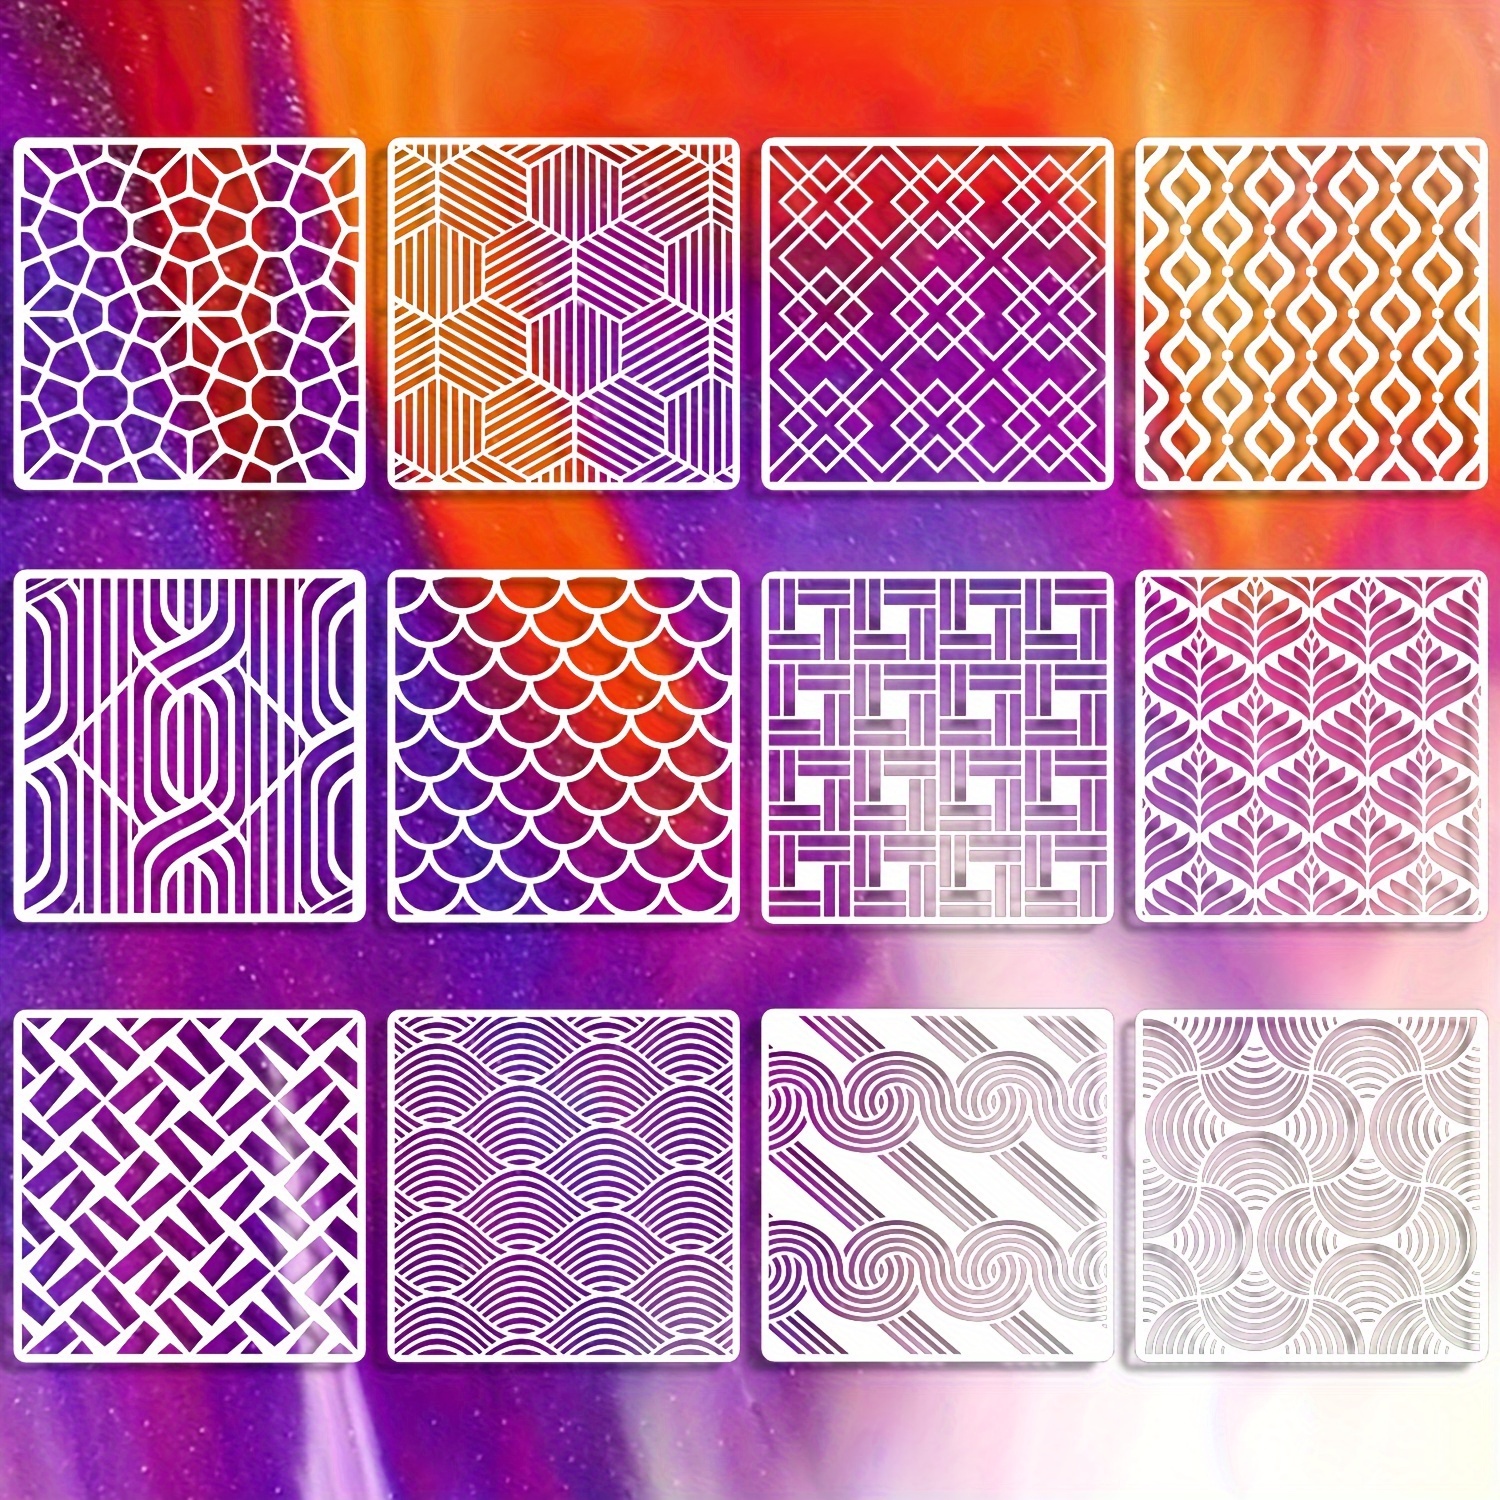 La Casa del Artesano-Set de 12 stencil plantillas de 15x15cms modelos  patrones Geometricos x12